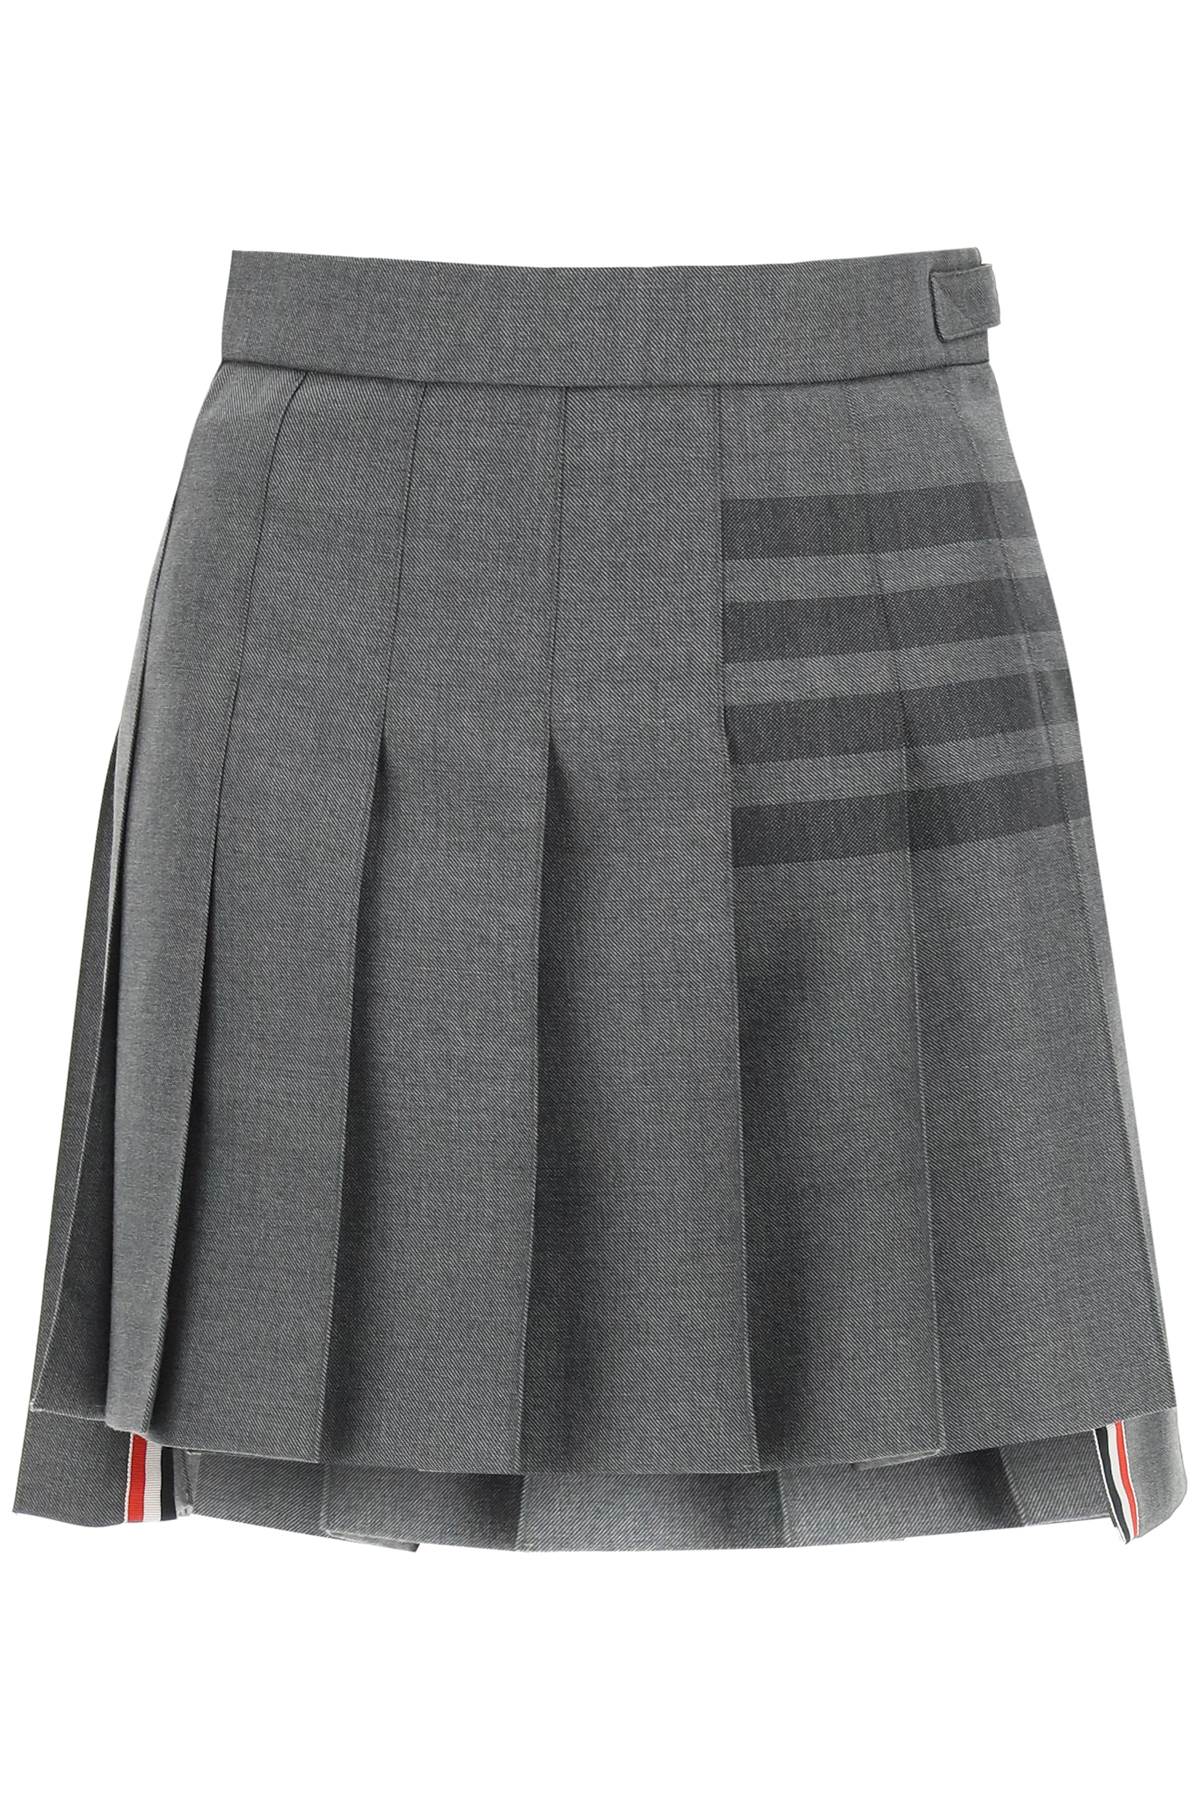 Thom Browne 4-bar Pleated Mini Skirt